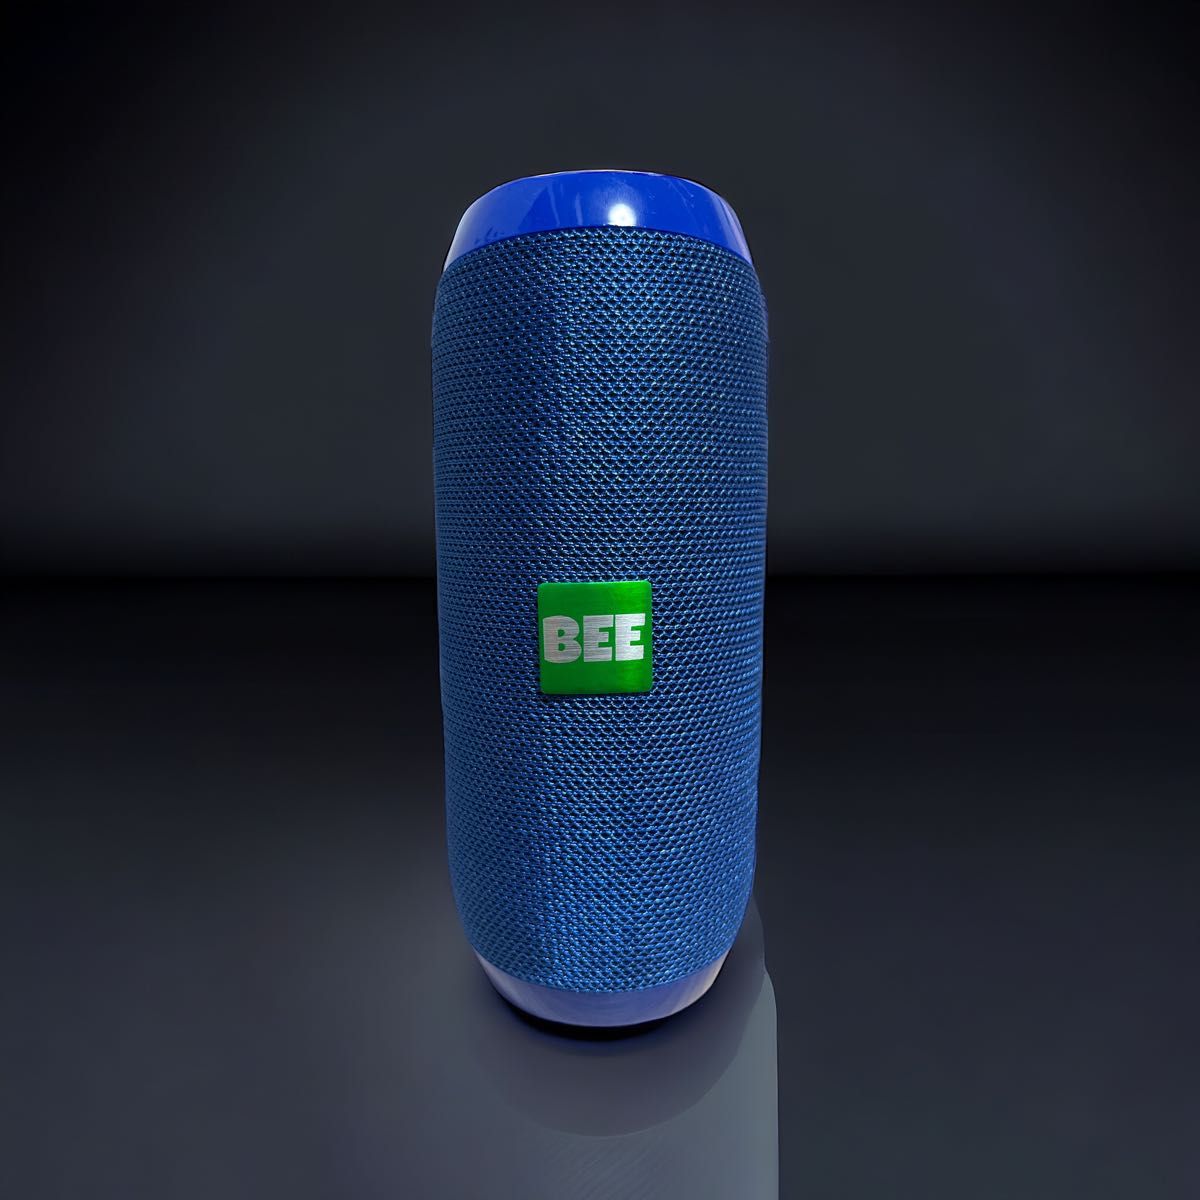 【新品】ワイヤレススピーカー ブルー 重低音 高音質 防水 Bluetoothスピーカー アウトドア ポータブル